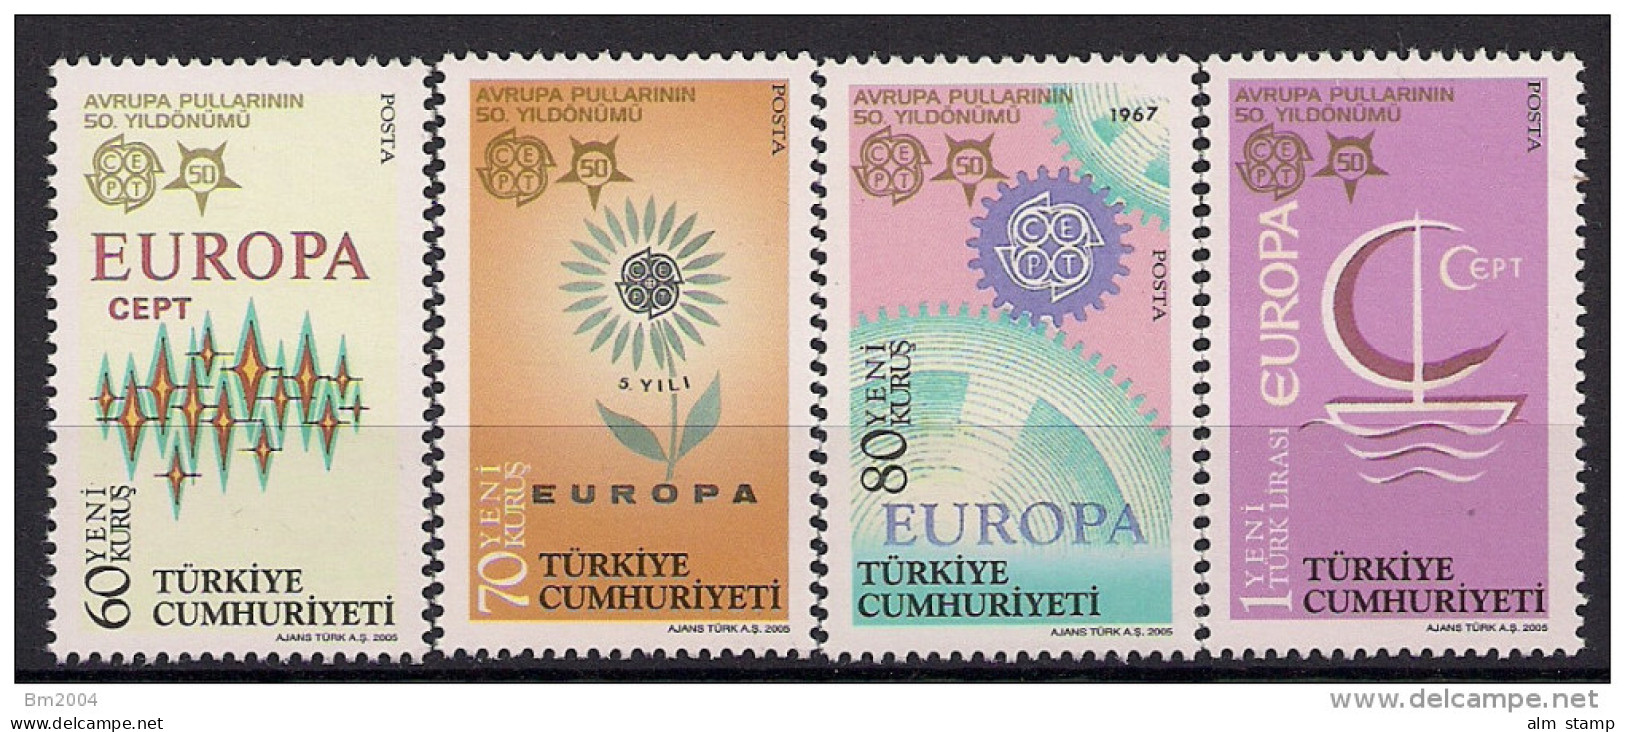 2005 Türkei Türkiye  Mi 3487-0 **MNH  50 Jahre Europamarken - Ungebraucht